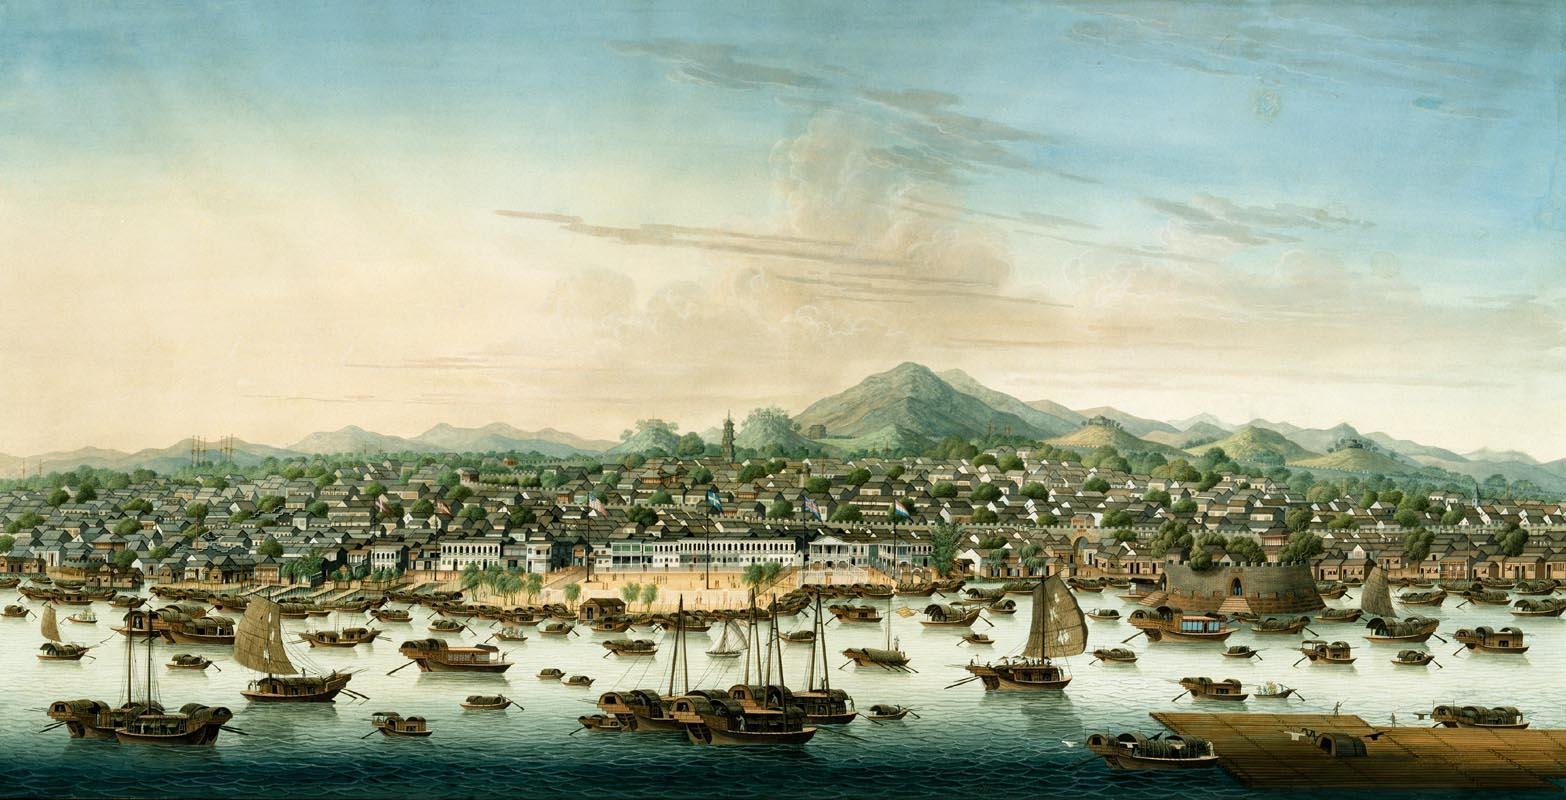 Uma pintura da cidade de Cantão por volta de 1800, onde Ching Shih viveu antes de se tornar uma pirata. (Fonte: Wikimedia Commons)